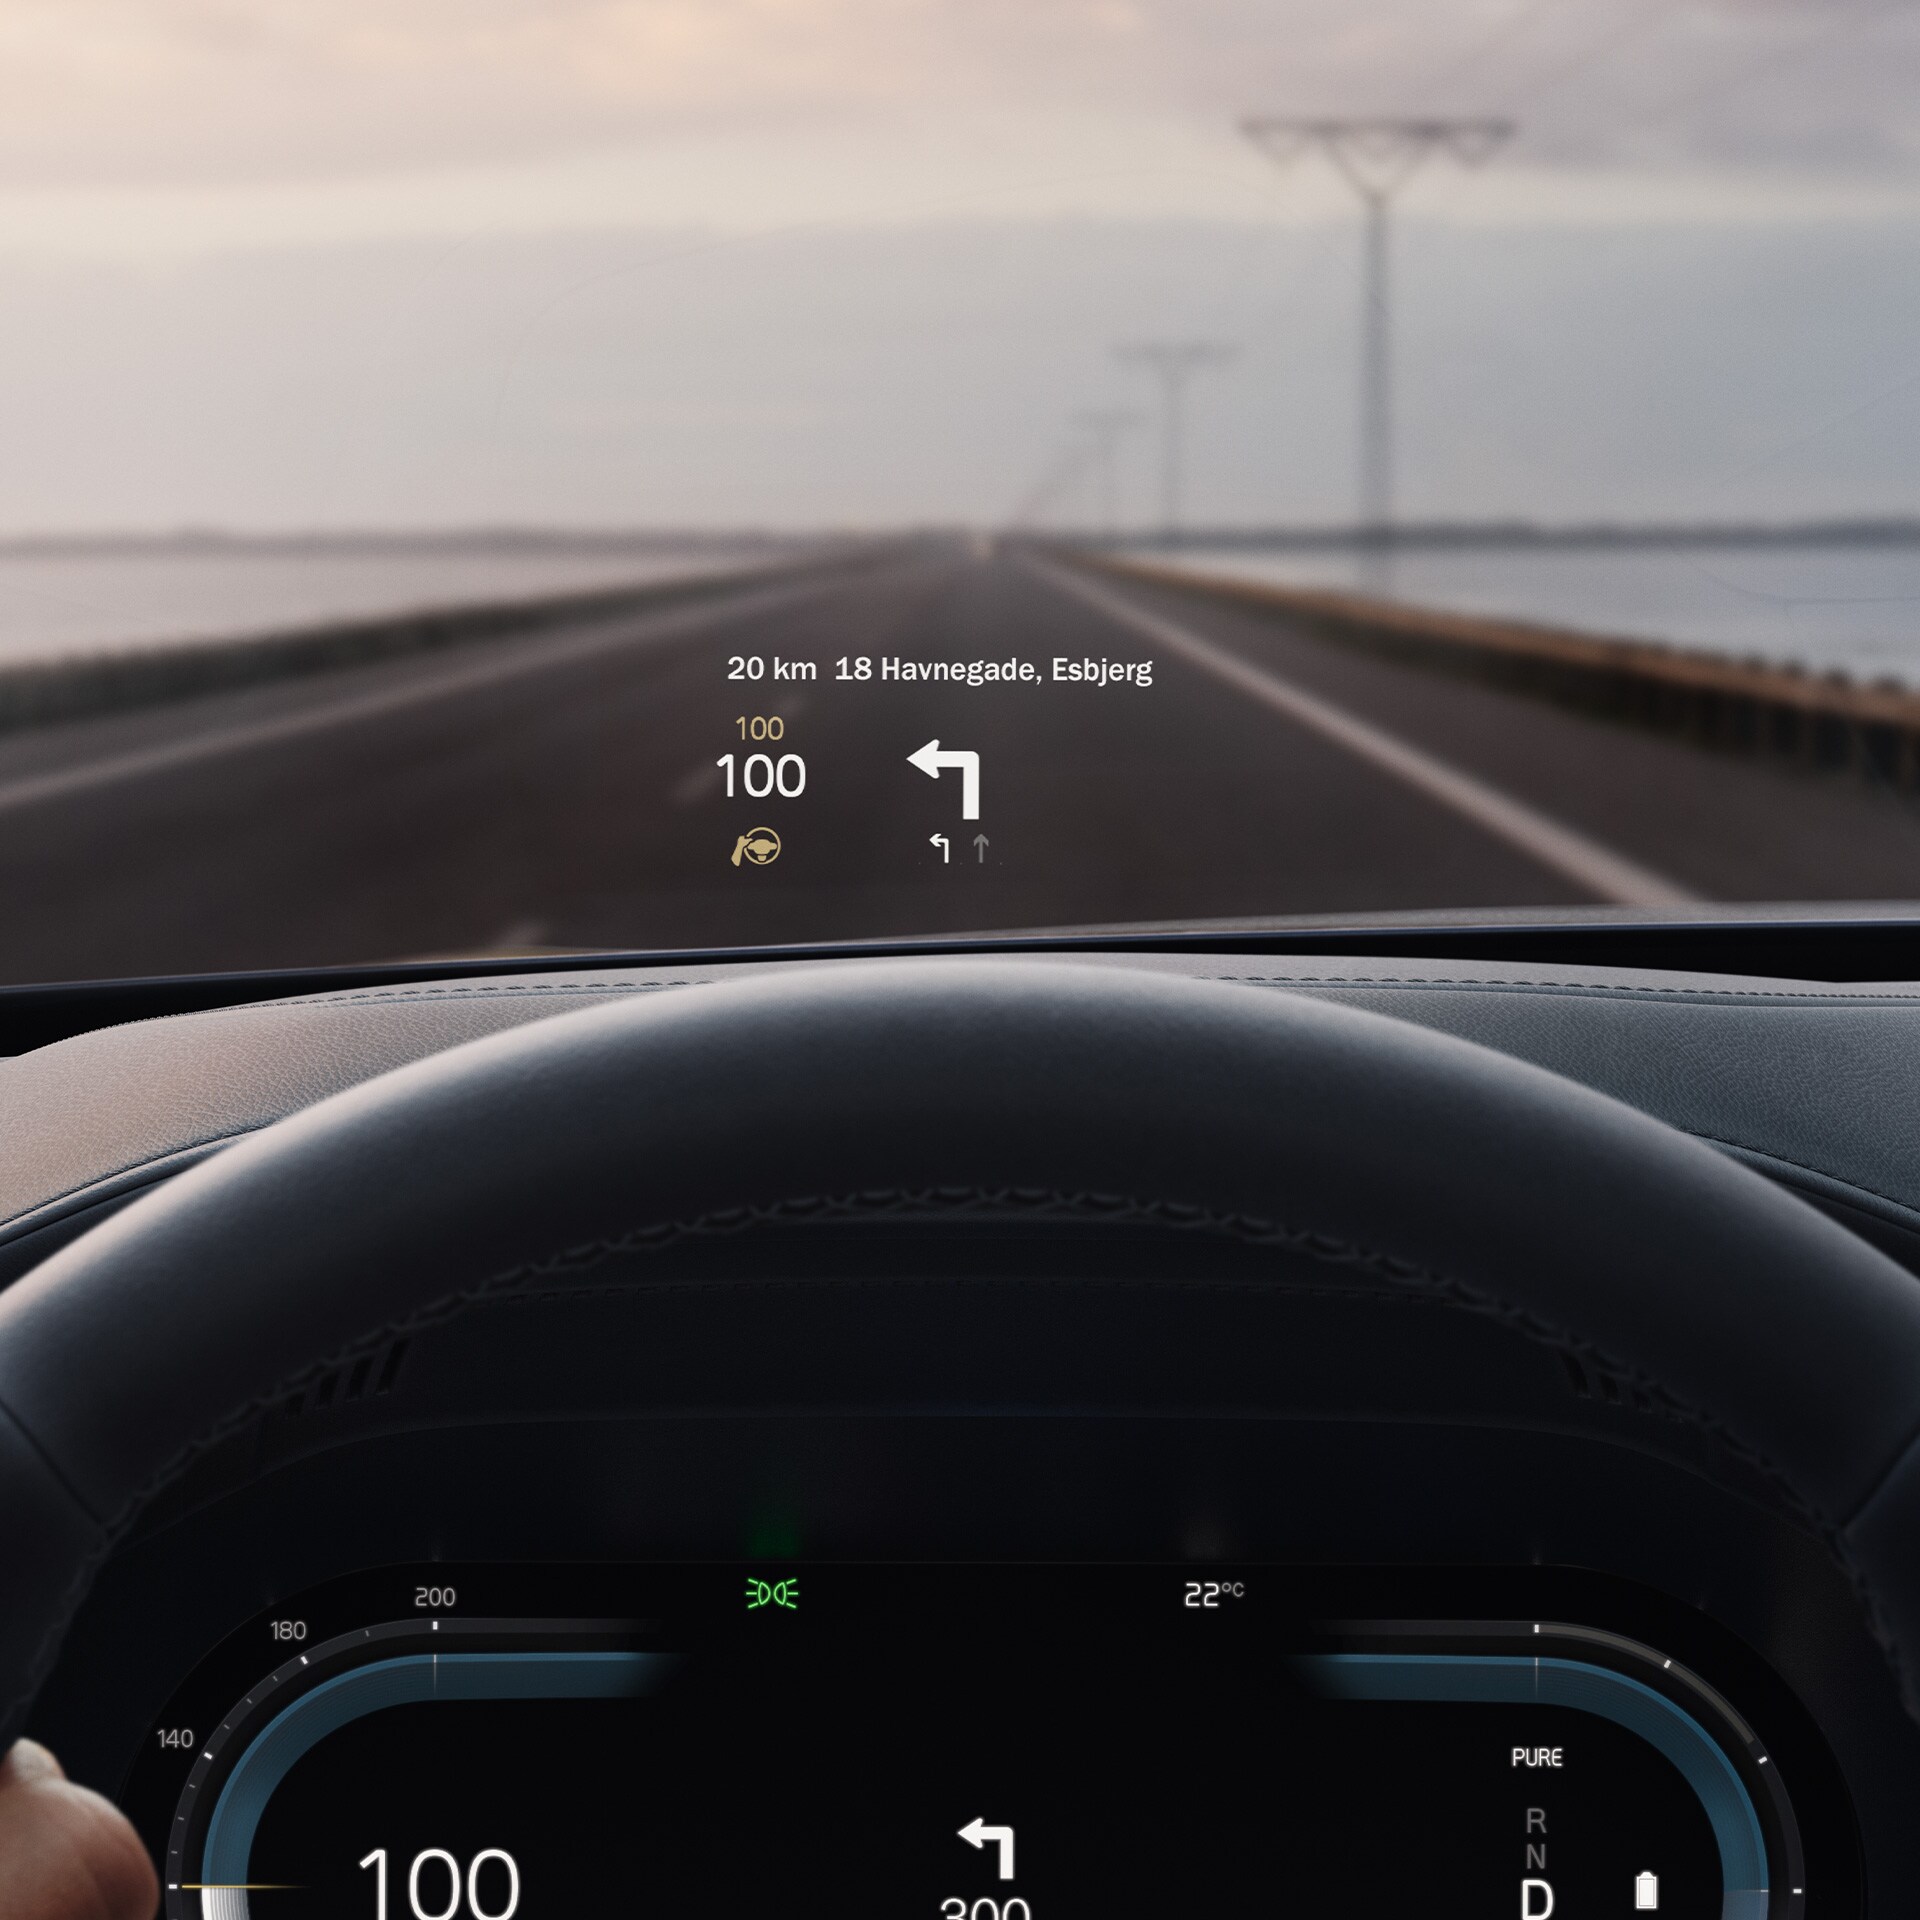 Wyświetlacz przezierny we wnętrzu samochodu Volvo, wskazujący prędkość jazdy i wskazówki nawigacji na przedniej szybie.